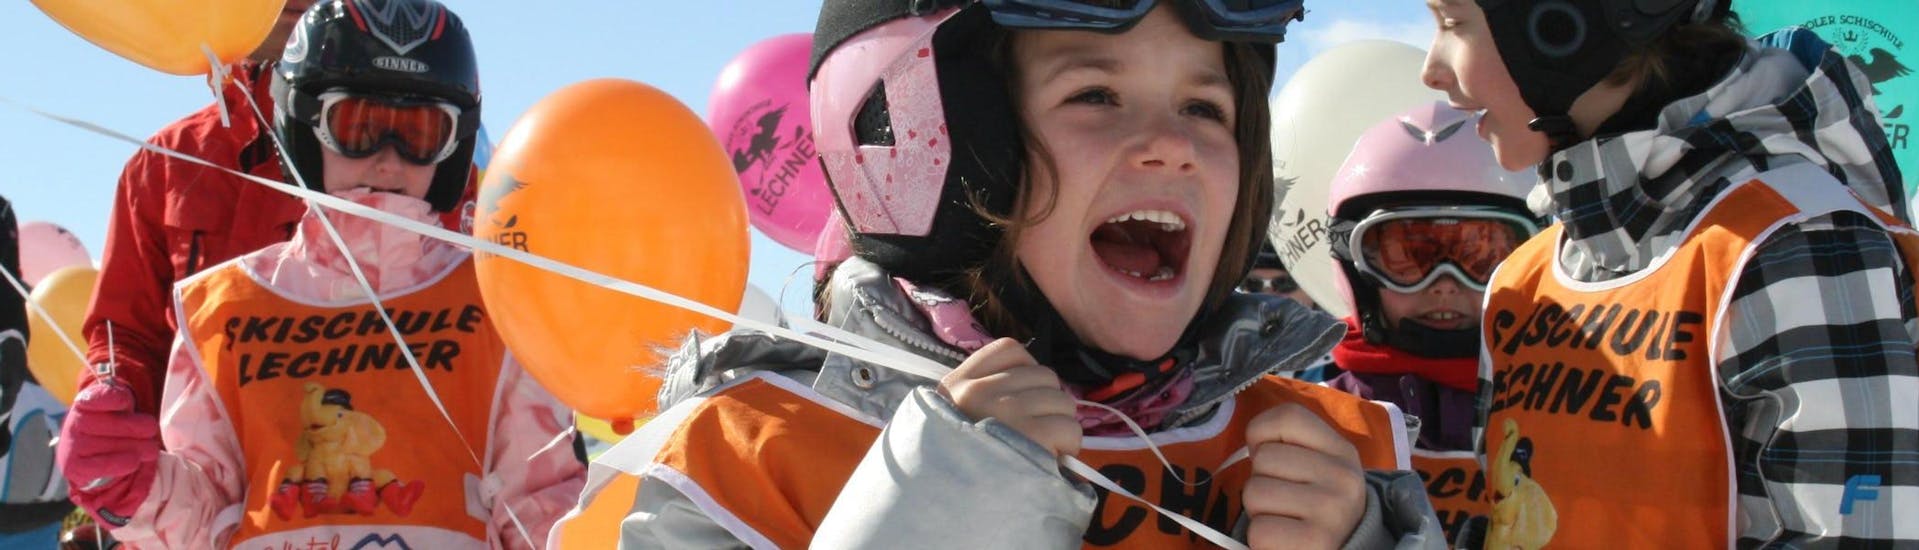 Verschillende kinderen die deelnemen aan de skilessen voor kinderen voor beginners (5-14 jaar), georganiseerd door de skischool Skischule Lechner, houden ballonnen vast met het logo van de skischool erop gedrukt.